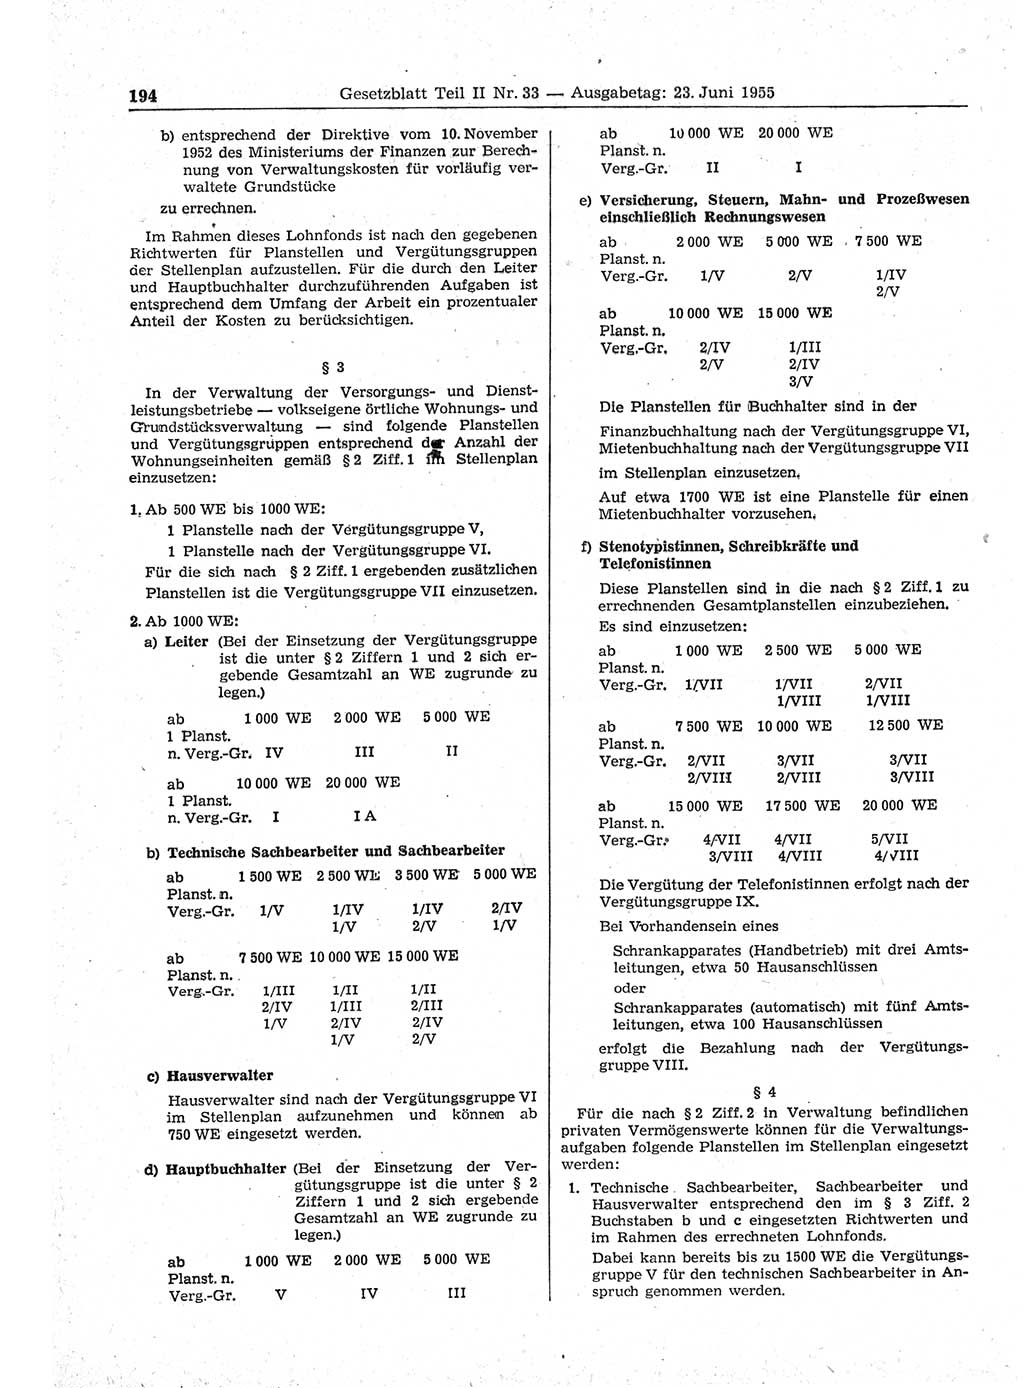 Gesetzblatt (GBl.) der Deutschen Demokratischen Republik (DDR) Teil ⅠⅠ 1955, Seite 194 (GBl. DDR ⅠⅠ 1955, S. 194)